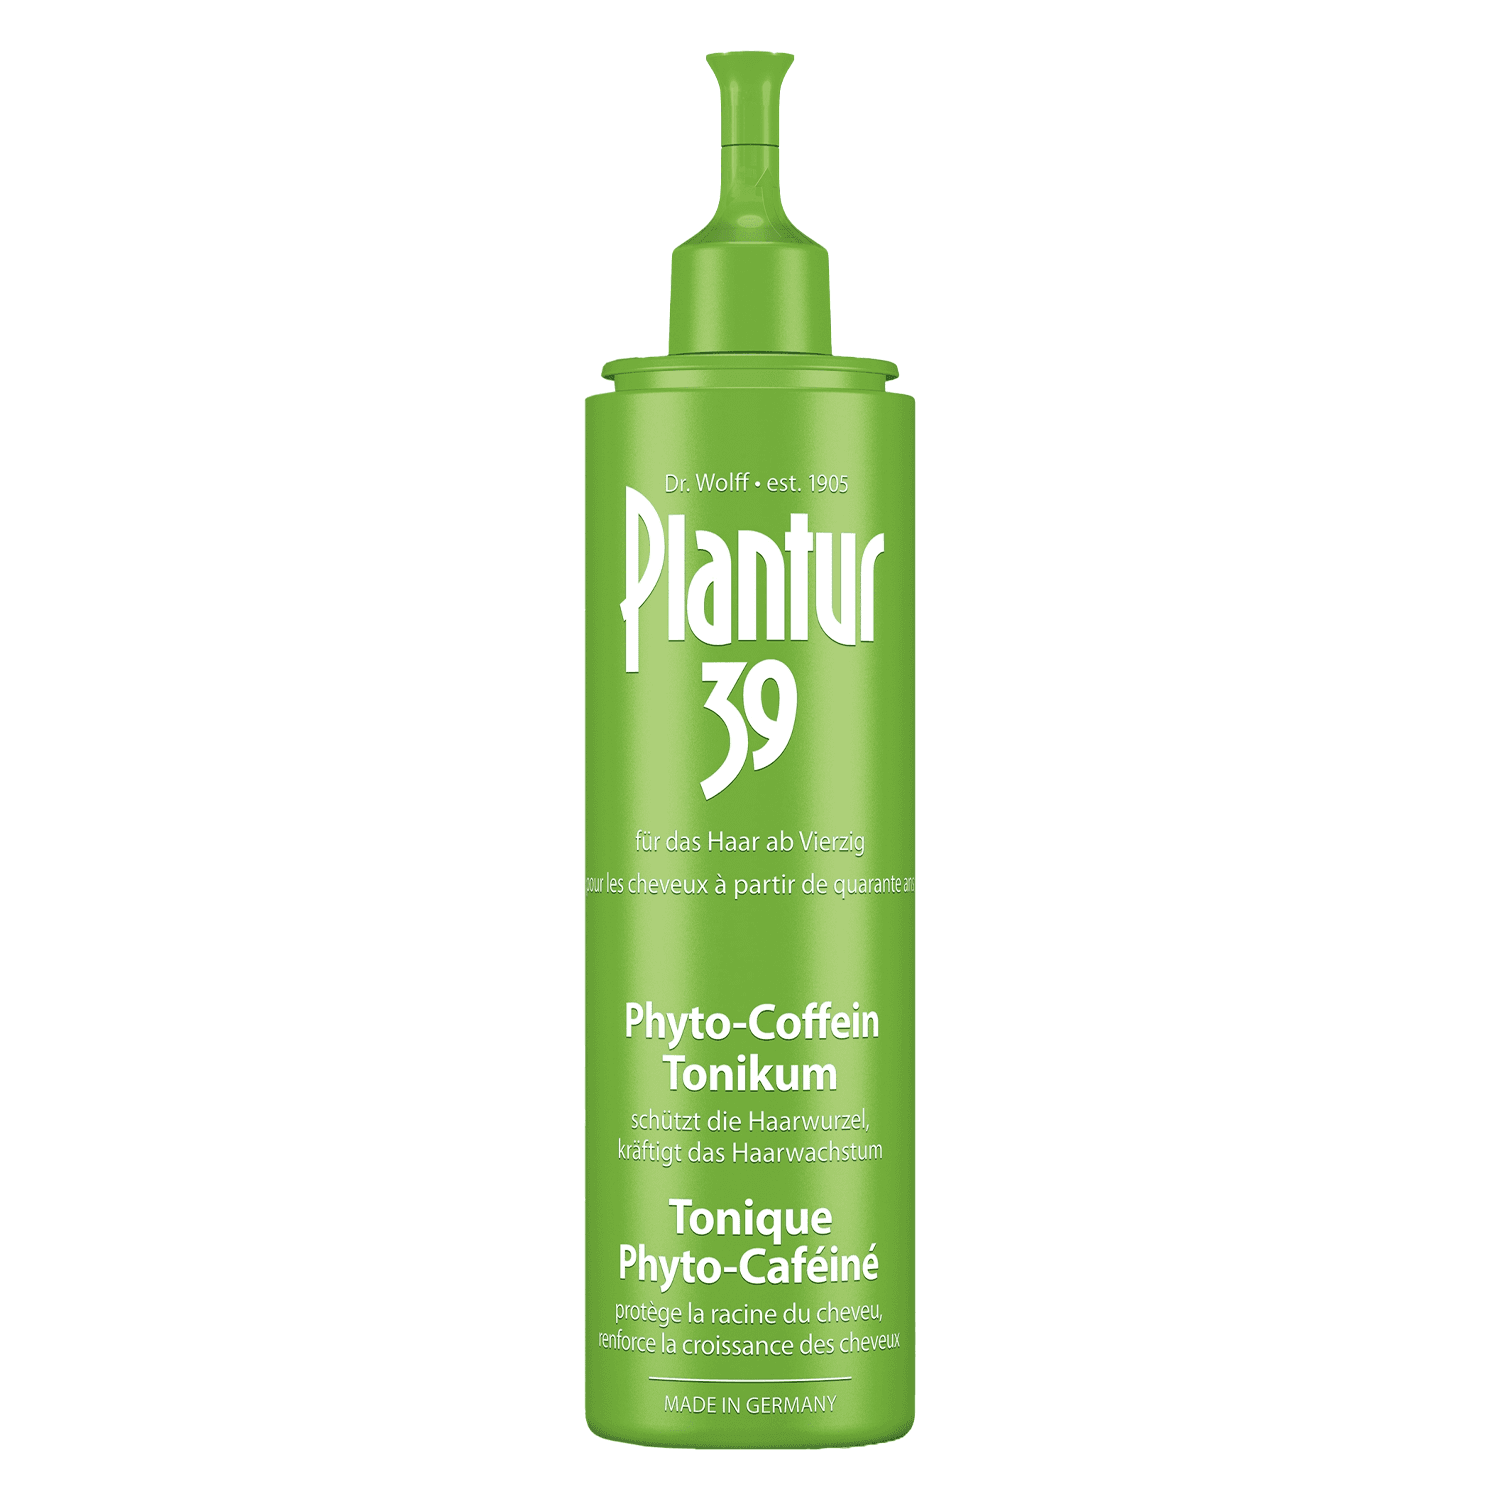 Plantur 39 - Phyto-Coffein-Tonikum